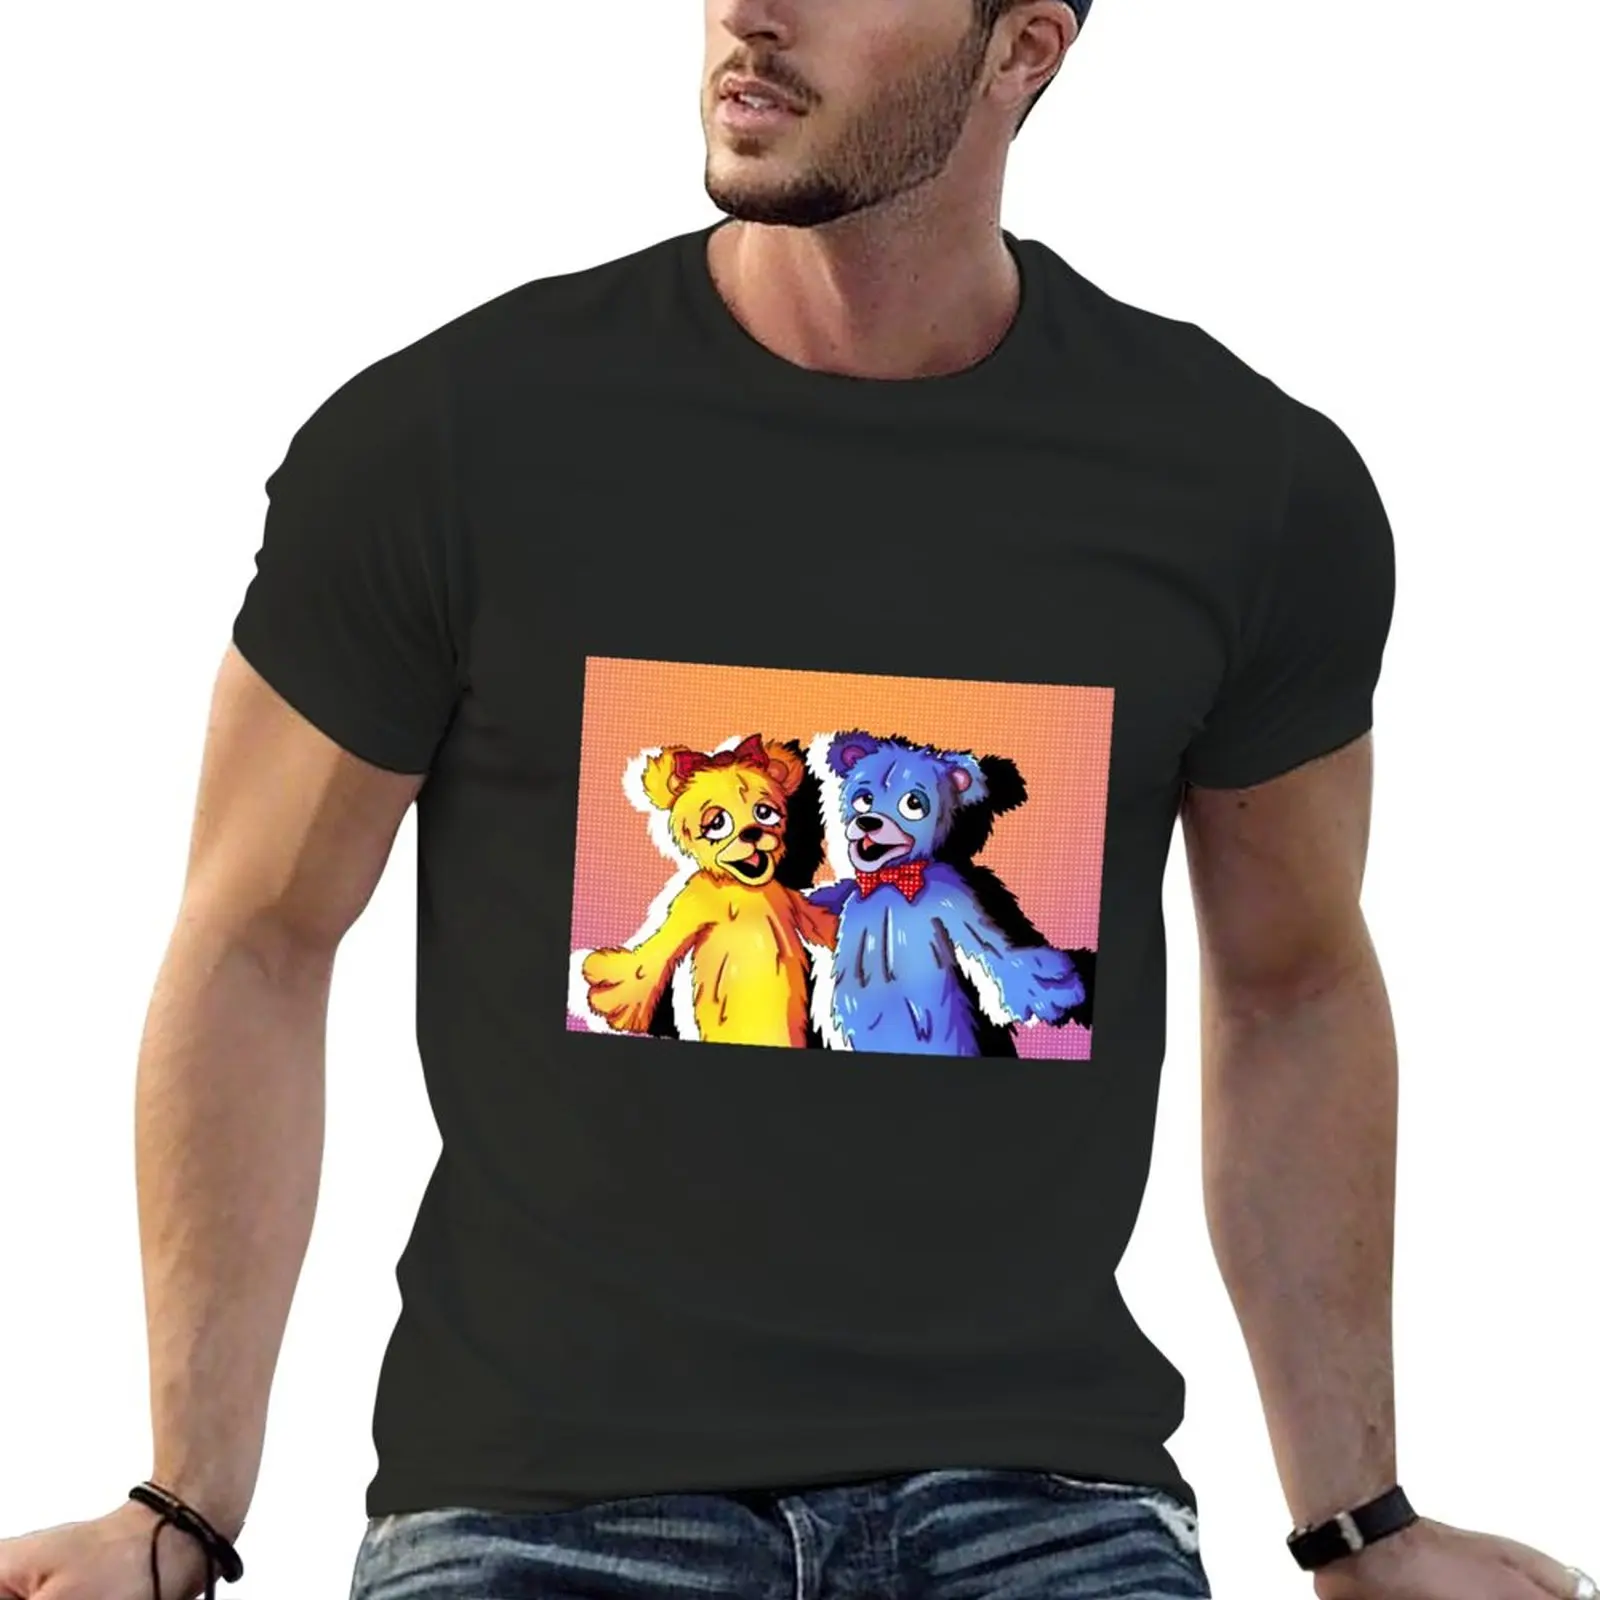 Новая футболка Bad Idea Bears- Avenue Q, футболка с аниме-одеждой, короткие мужские однотонные футболки